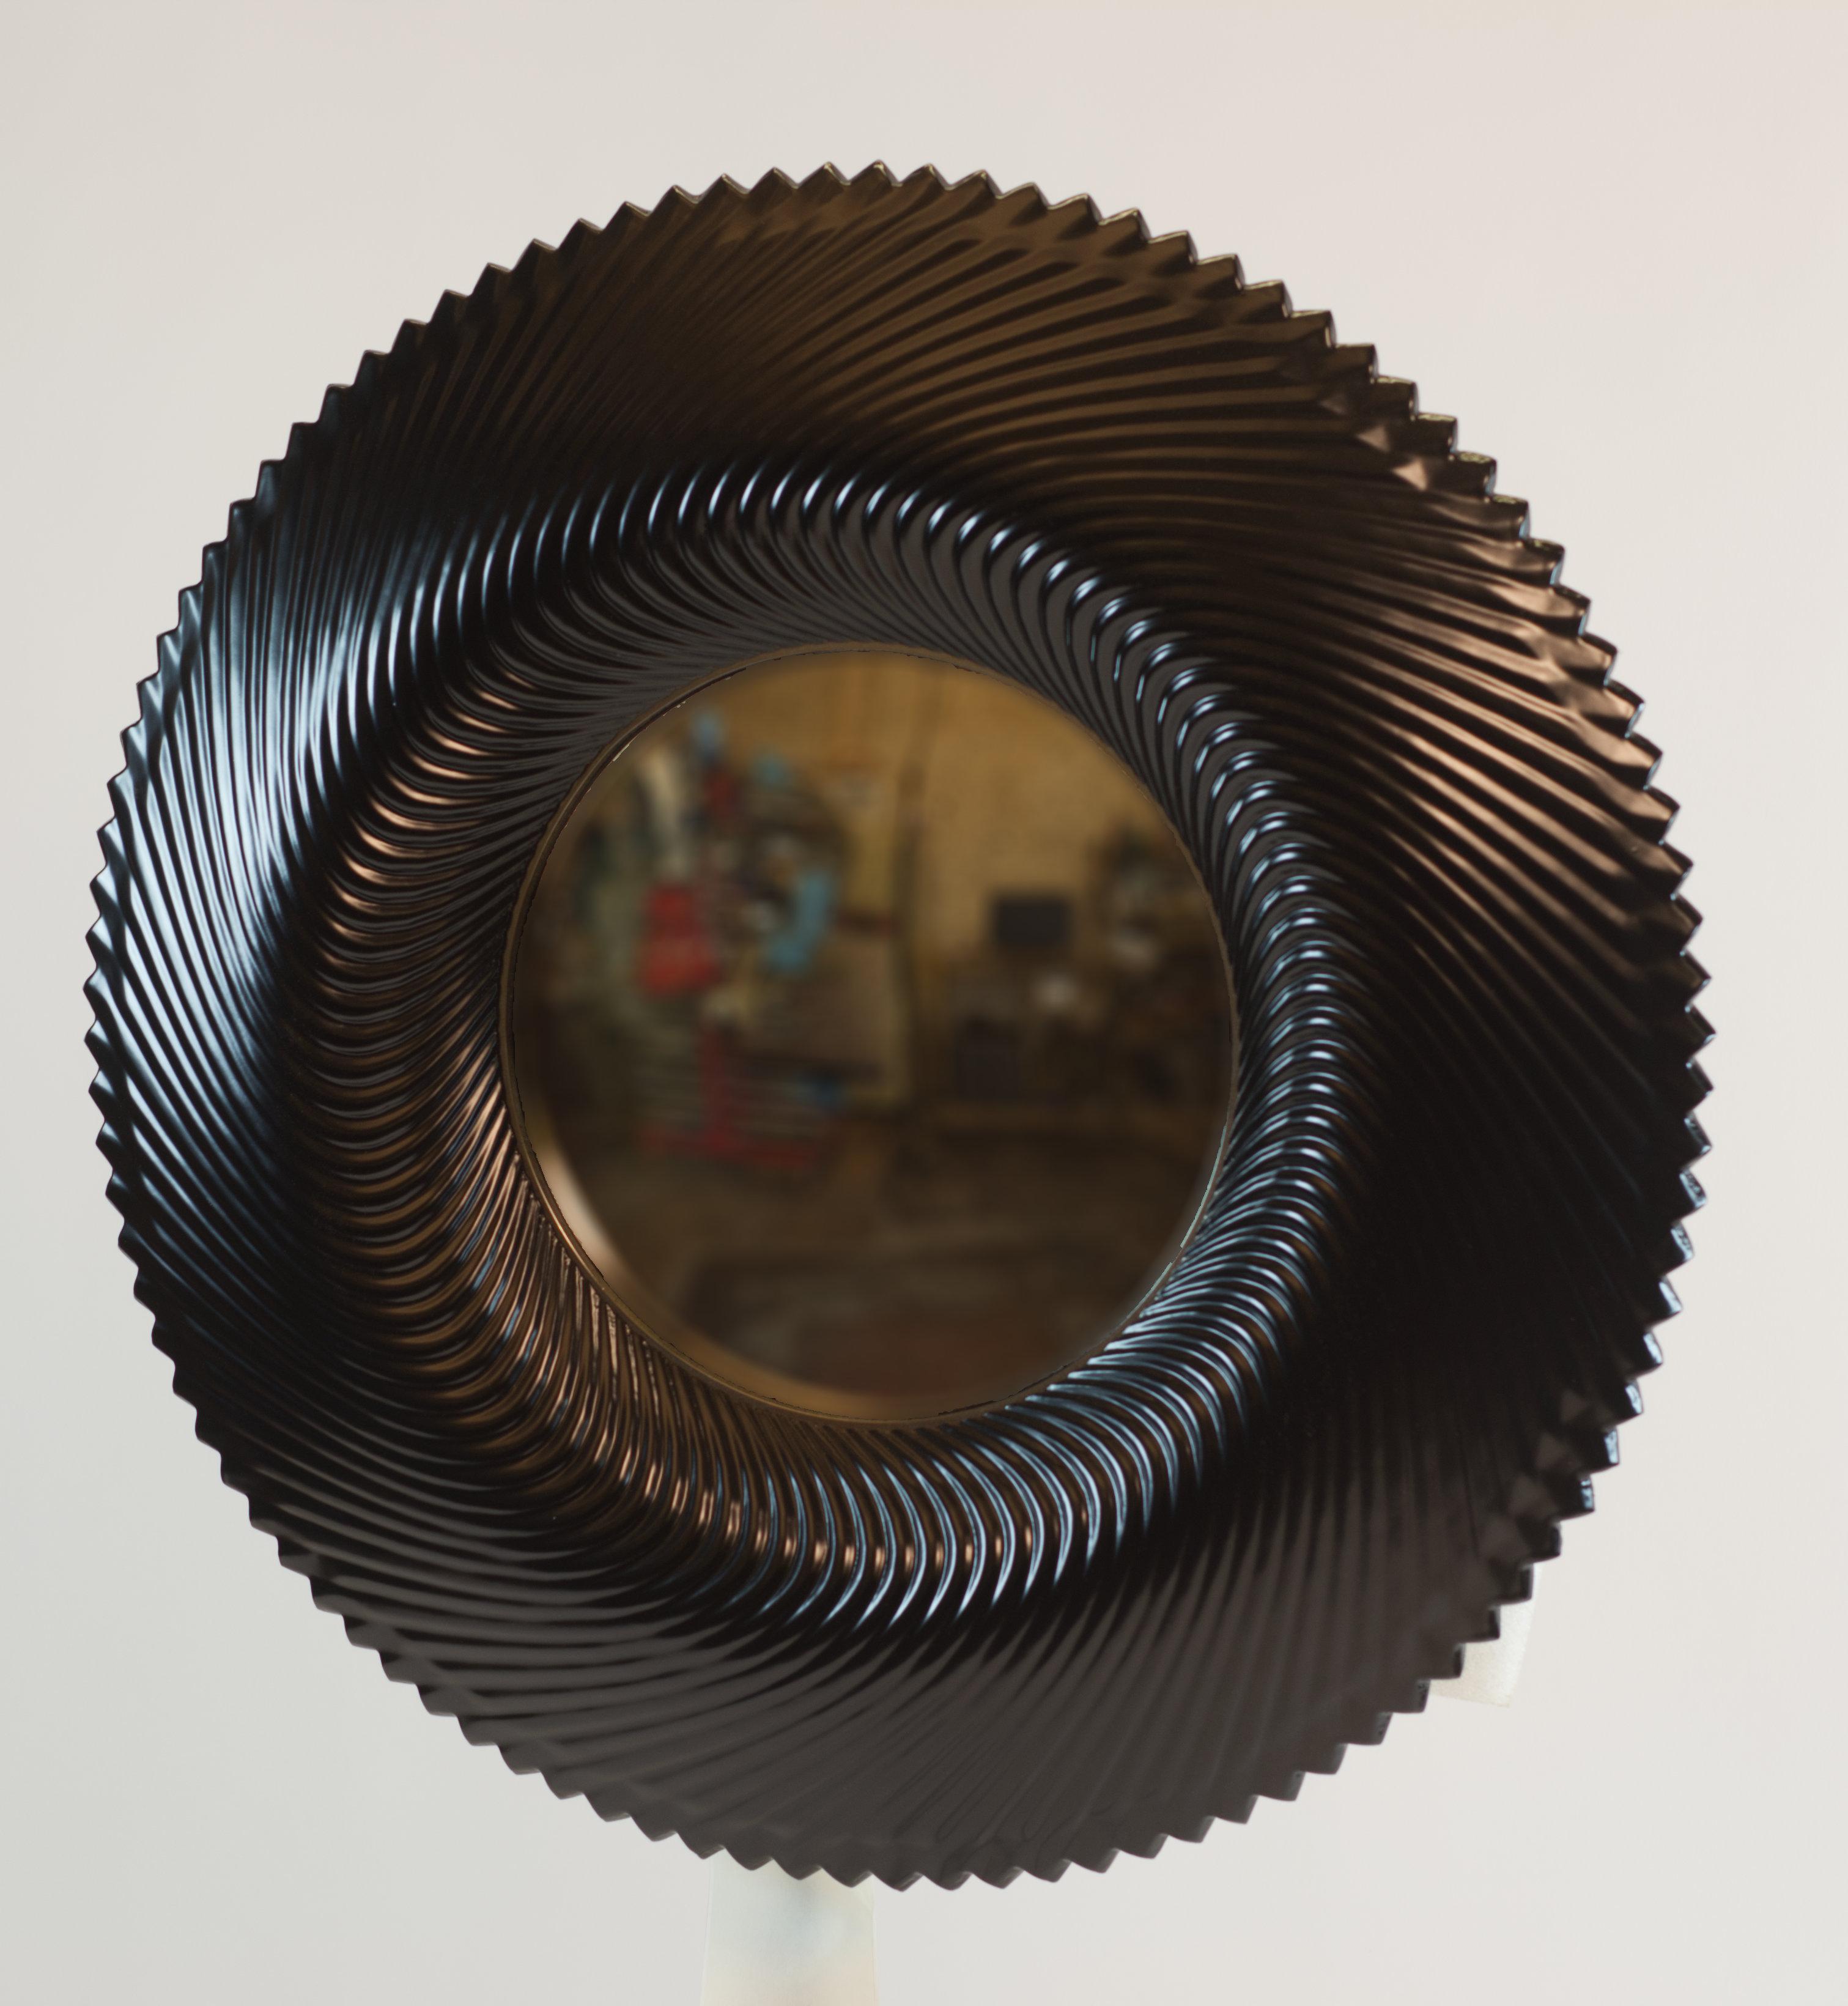 Surrealistischer skulpturaler konvexer Spiegel von Roman Erlikh Studio. Der konvexe Spiegel ist säurebehandelt und mit schwarzer und goldener Farbe hinterglasiert. Der Spiegel wird durch eine vernickelte Metallverzierung akzentuiert. Verschiedene